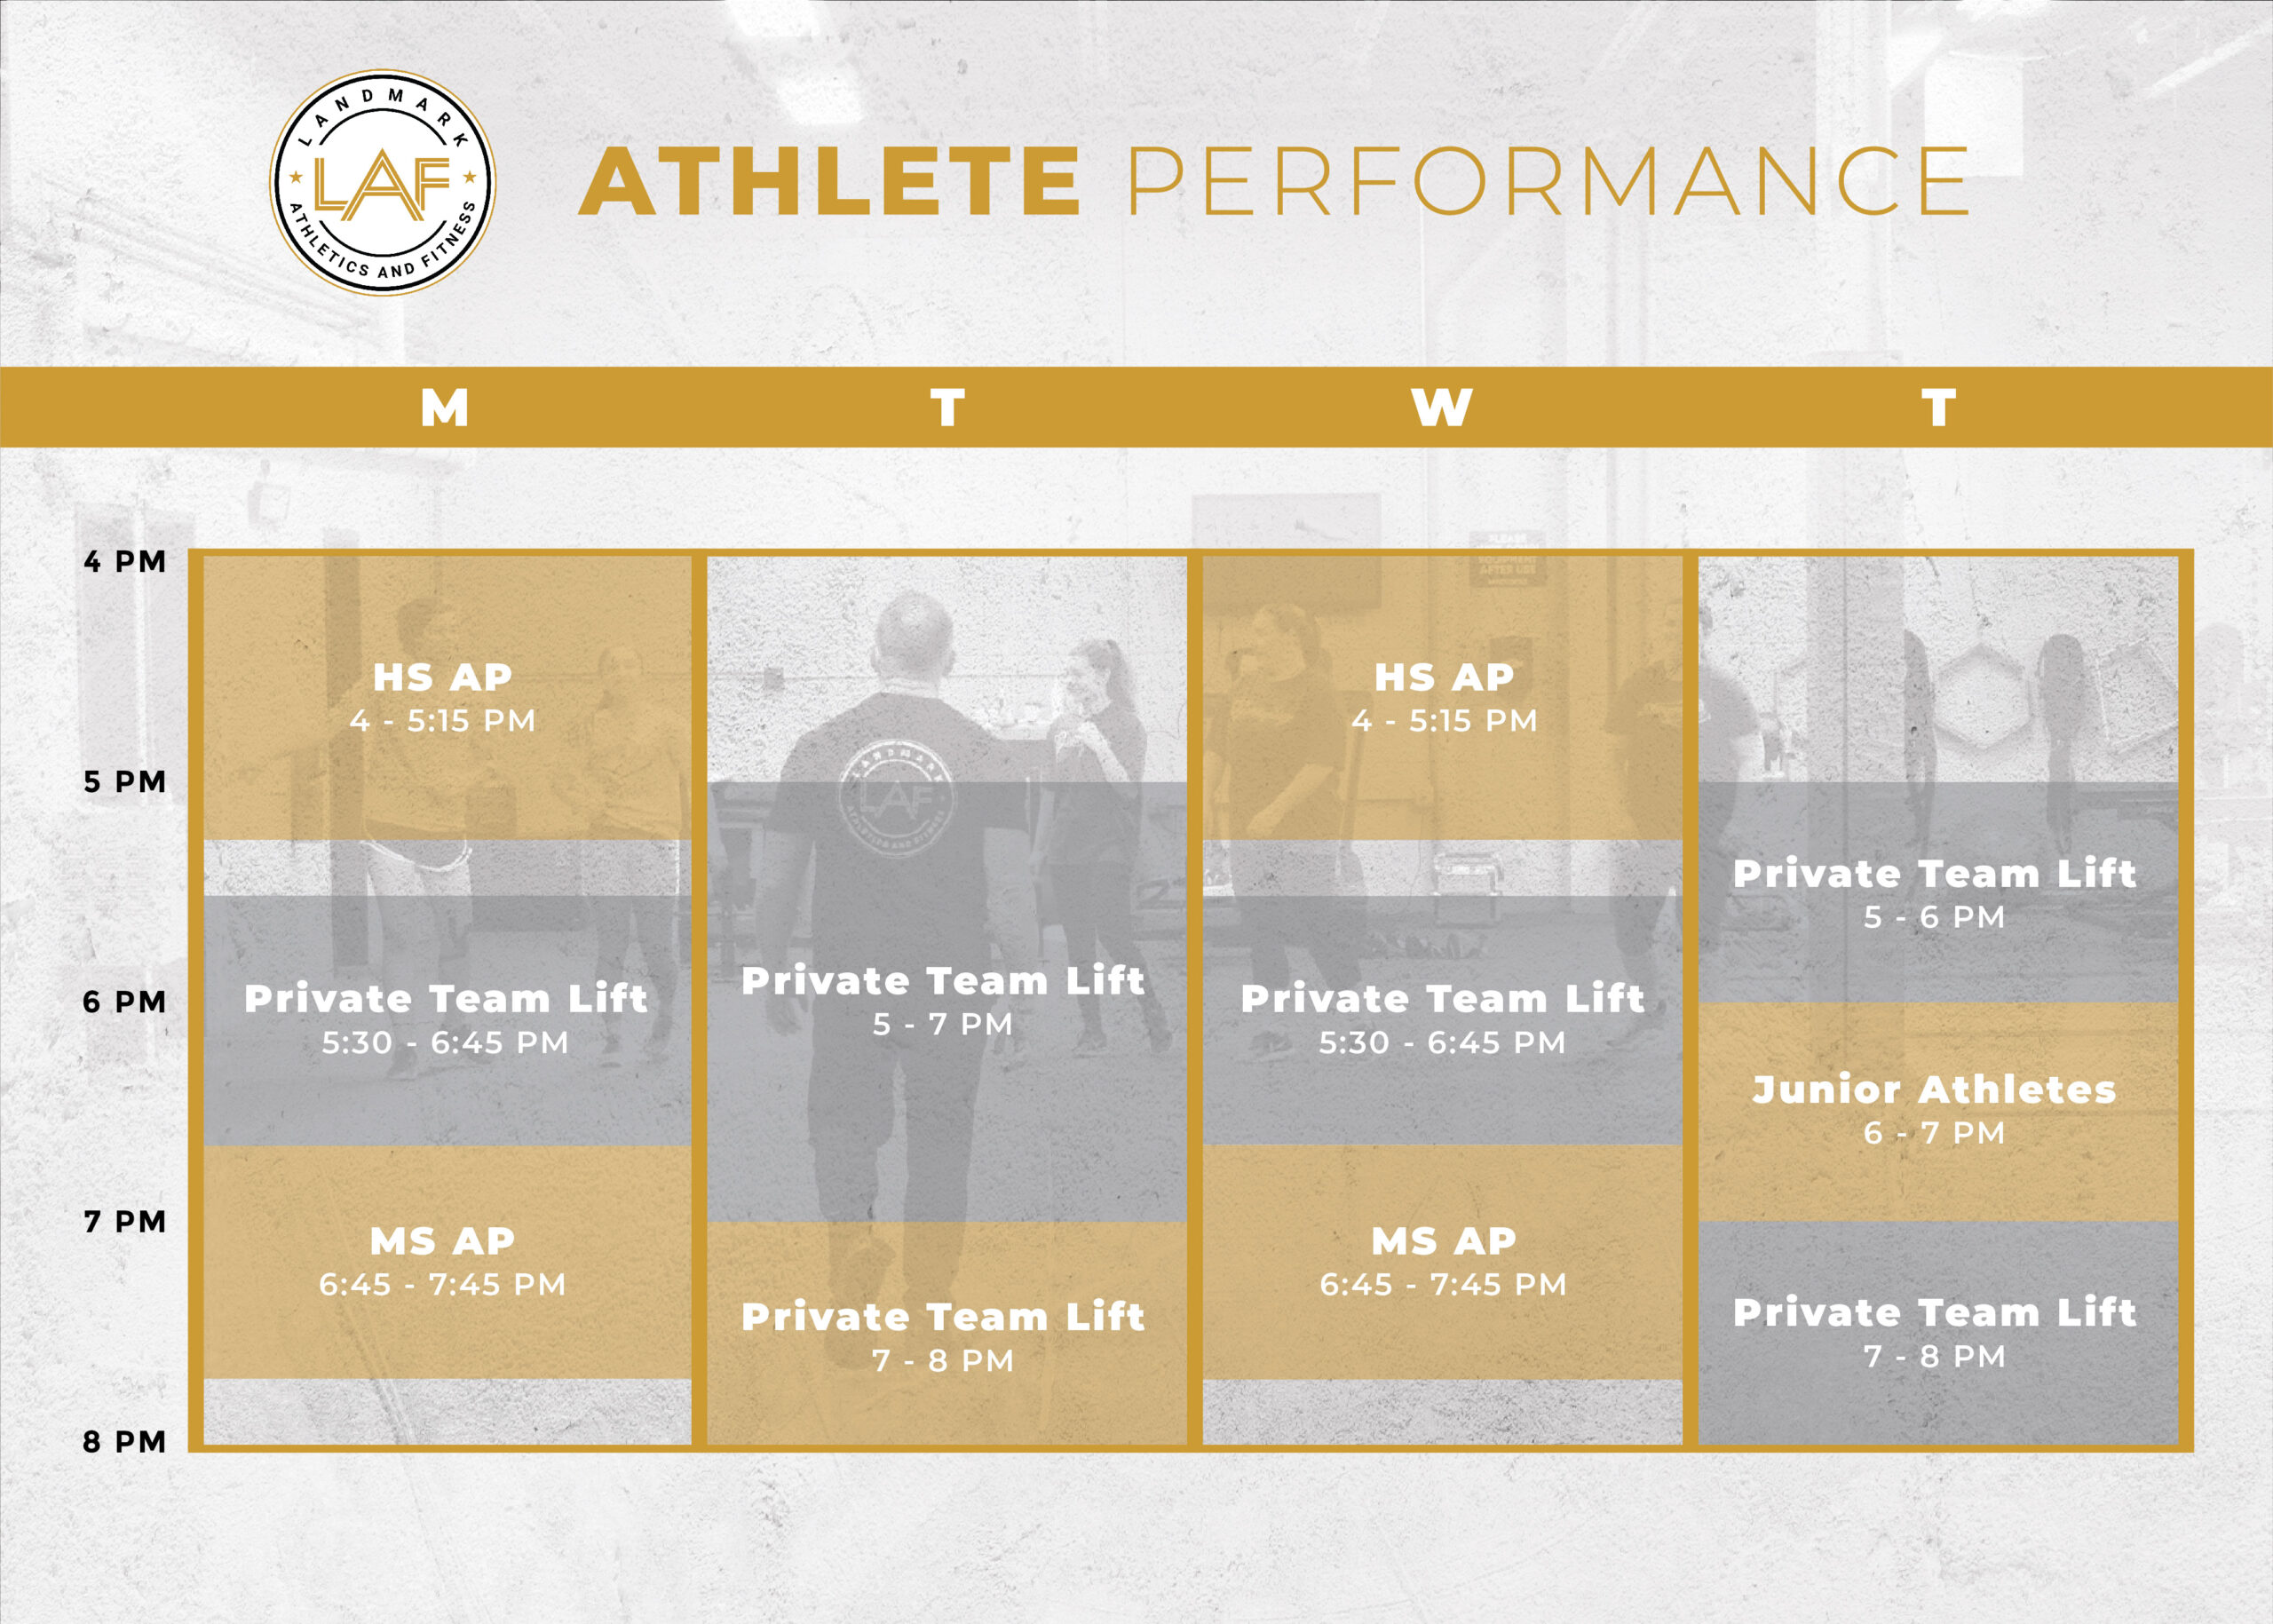 athlete performance schedule